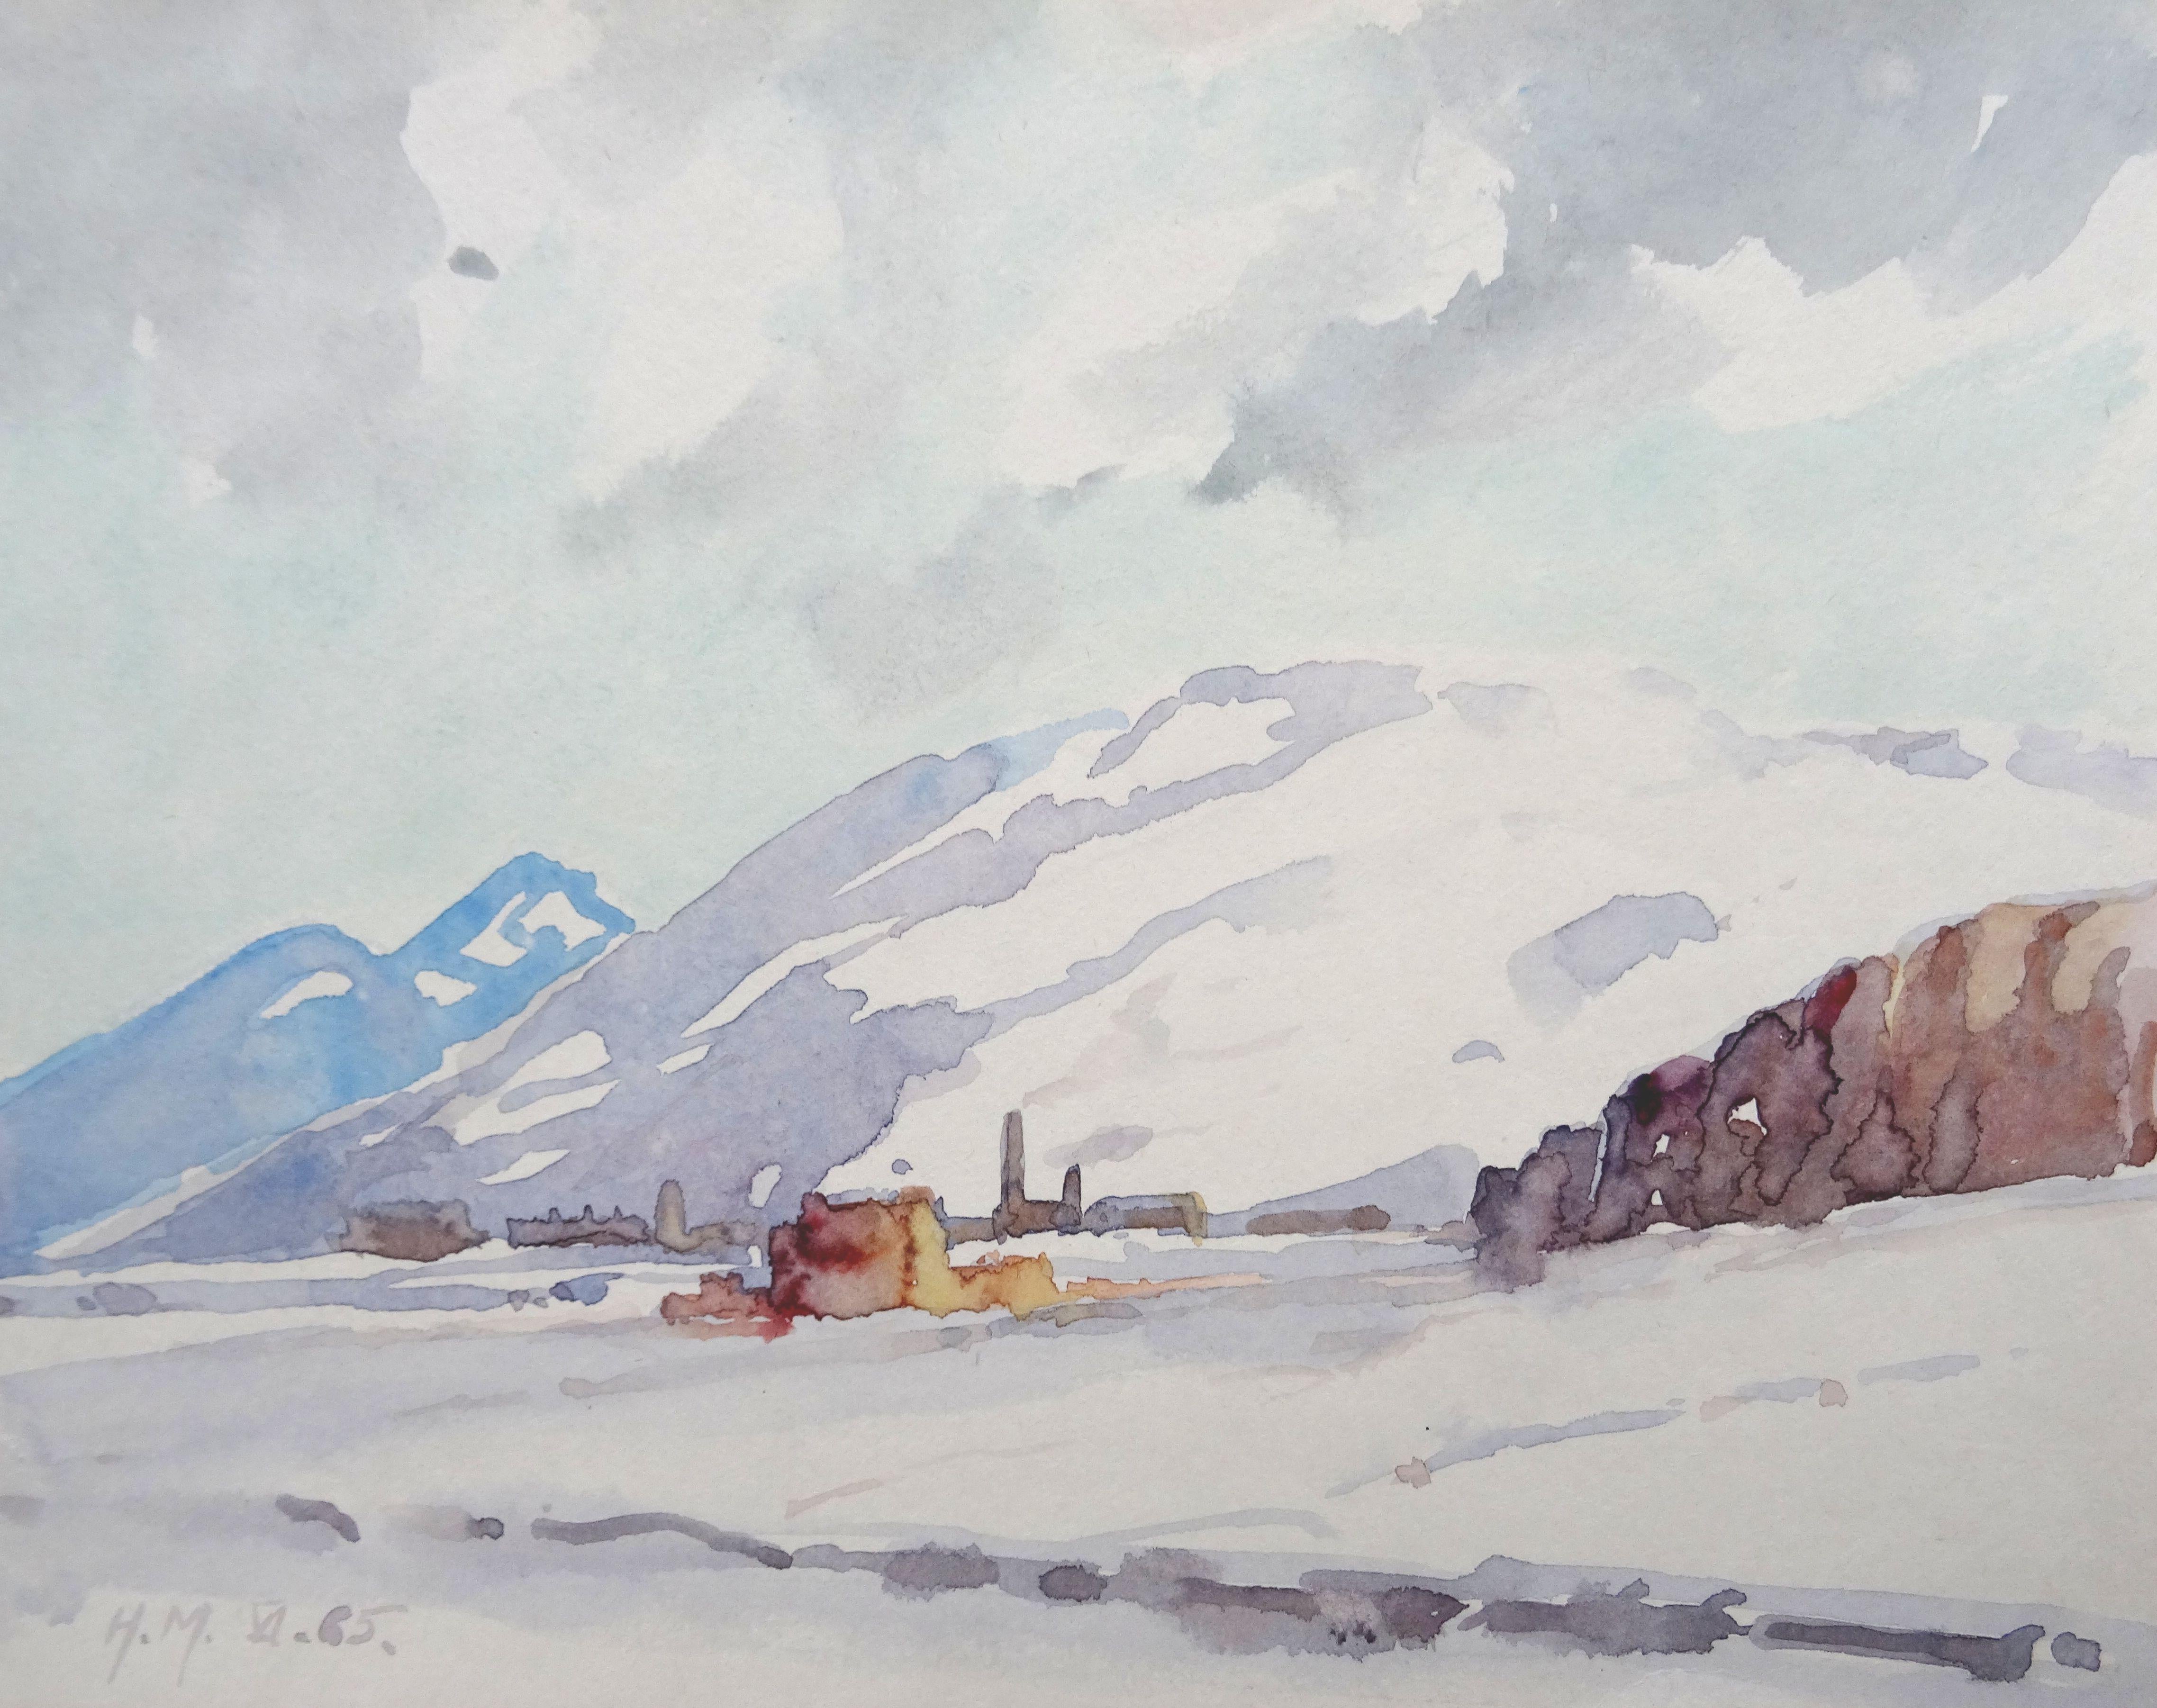 Herberts Mangolds Landscape Art - Winter landscape  1965, paper/watercolor, 20x25.5 cm